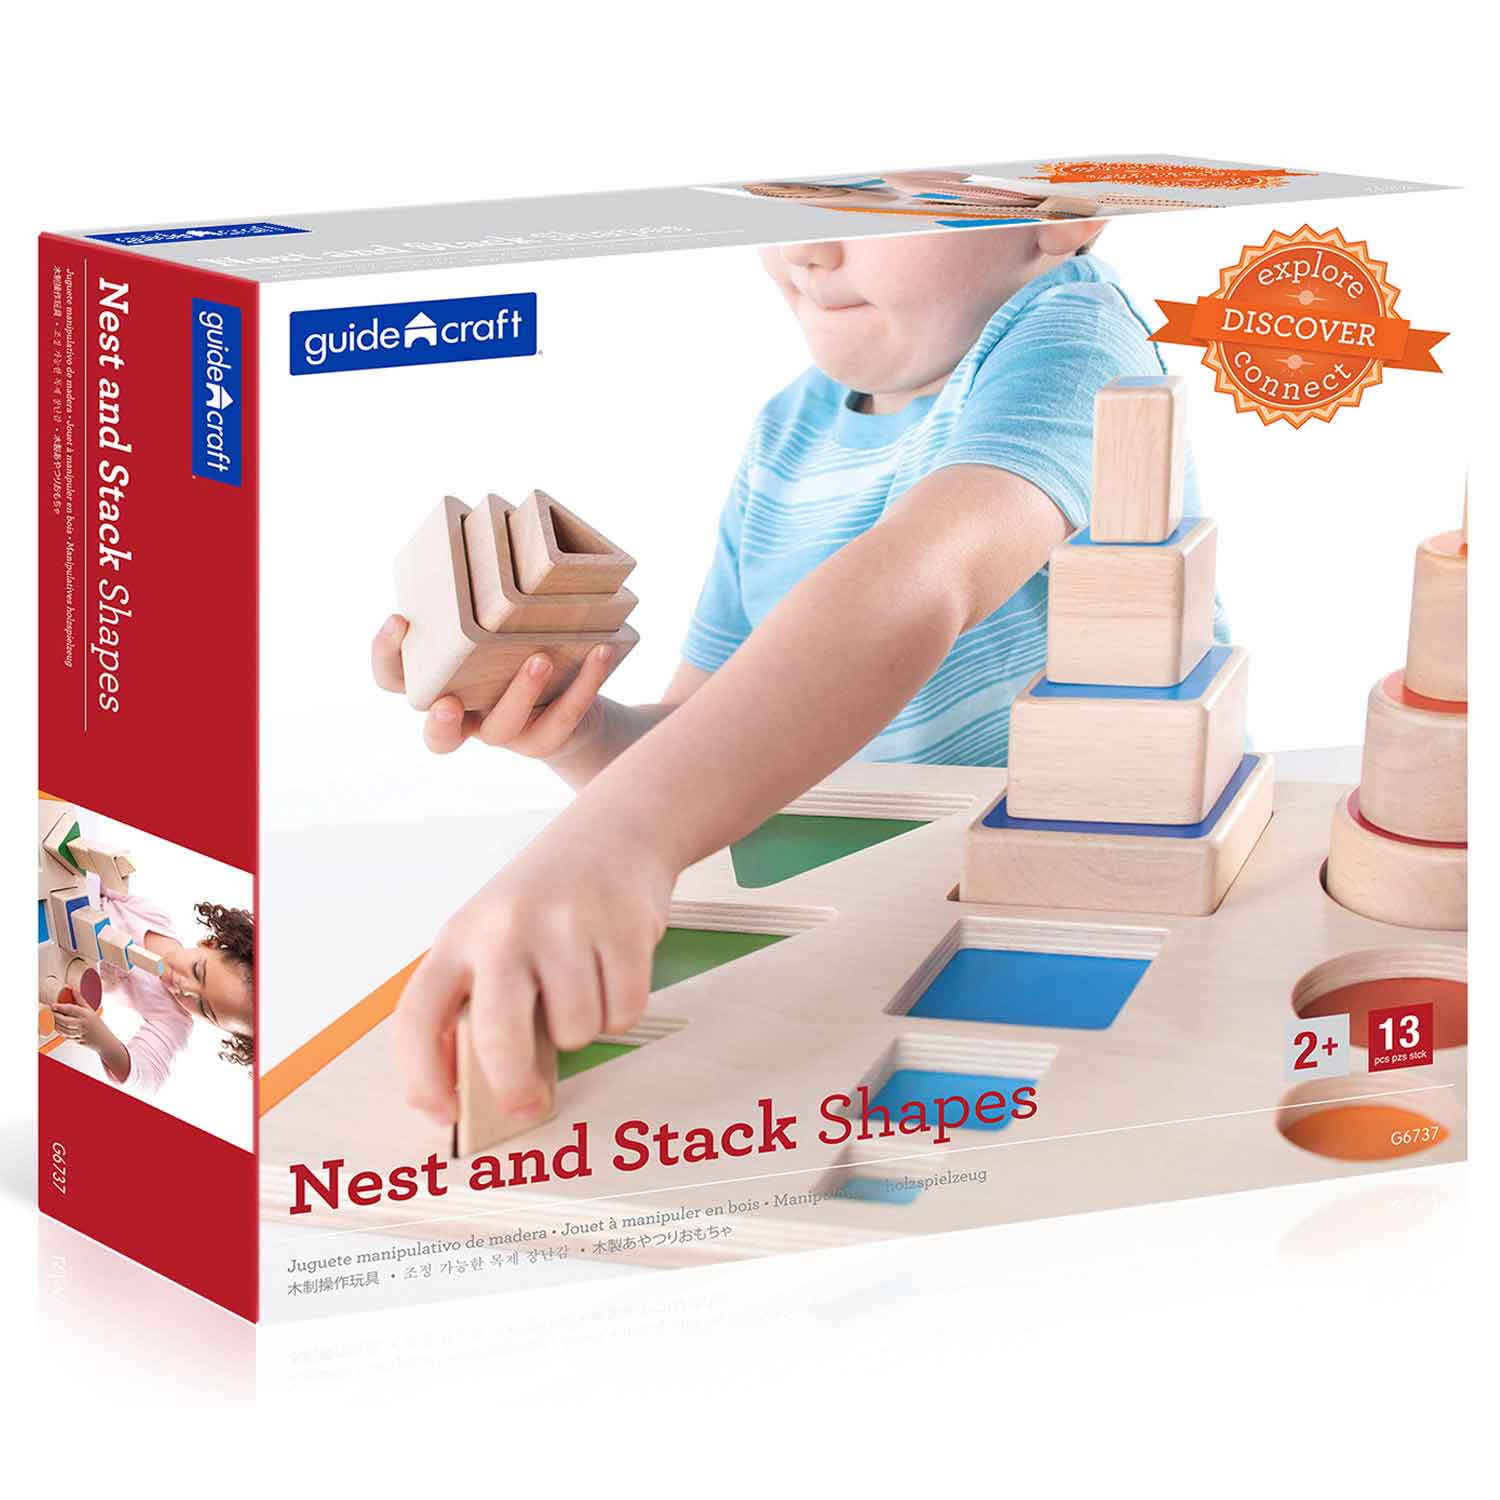 Nest & Stack Shapes